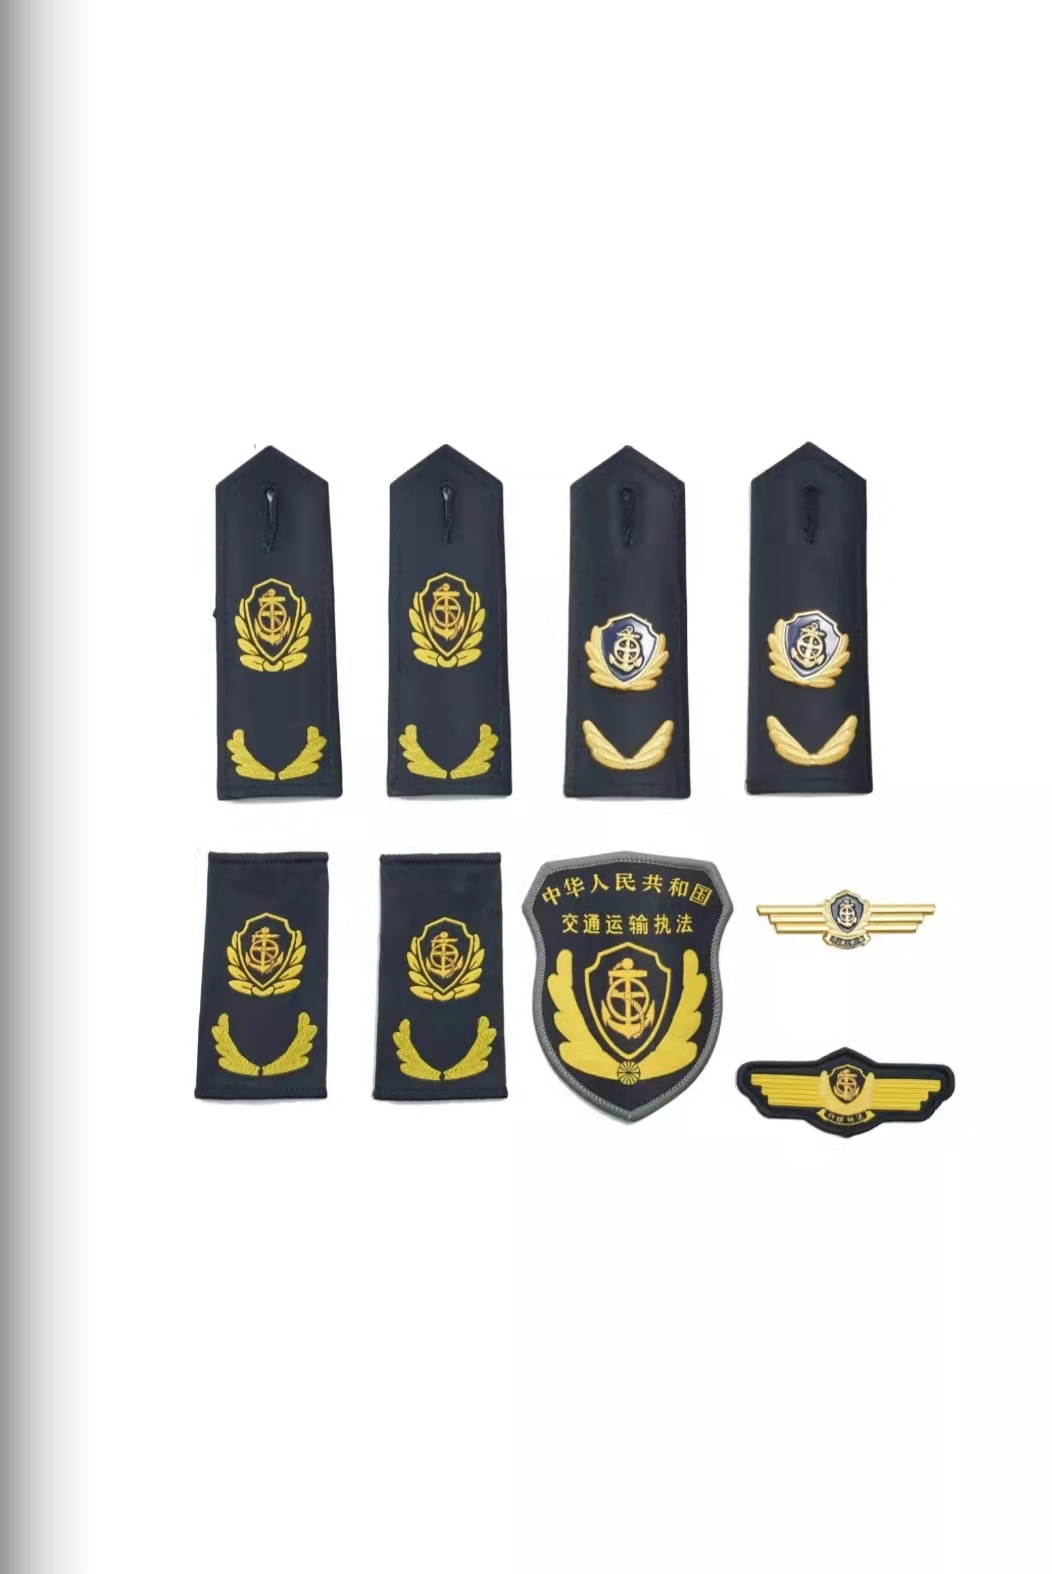 宁夏六部门统一交通运输执法服装标志